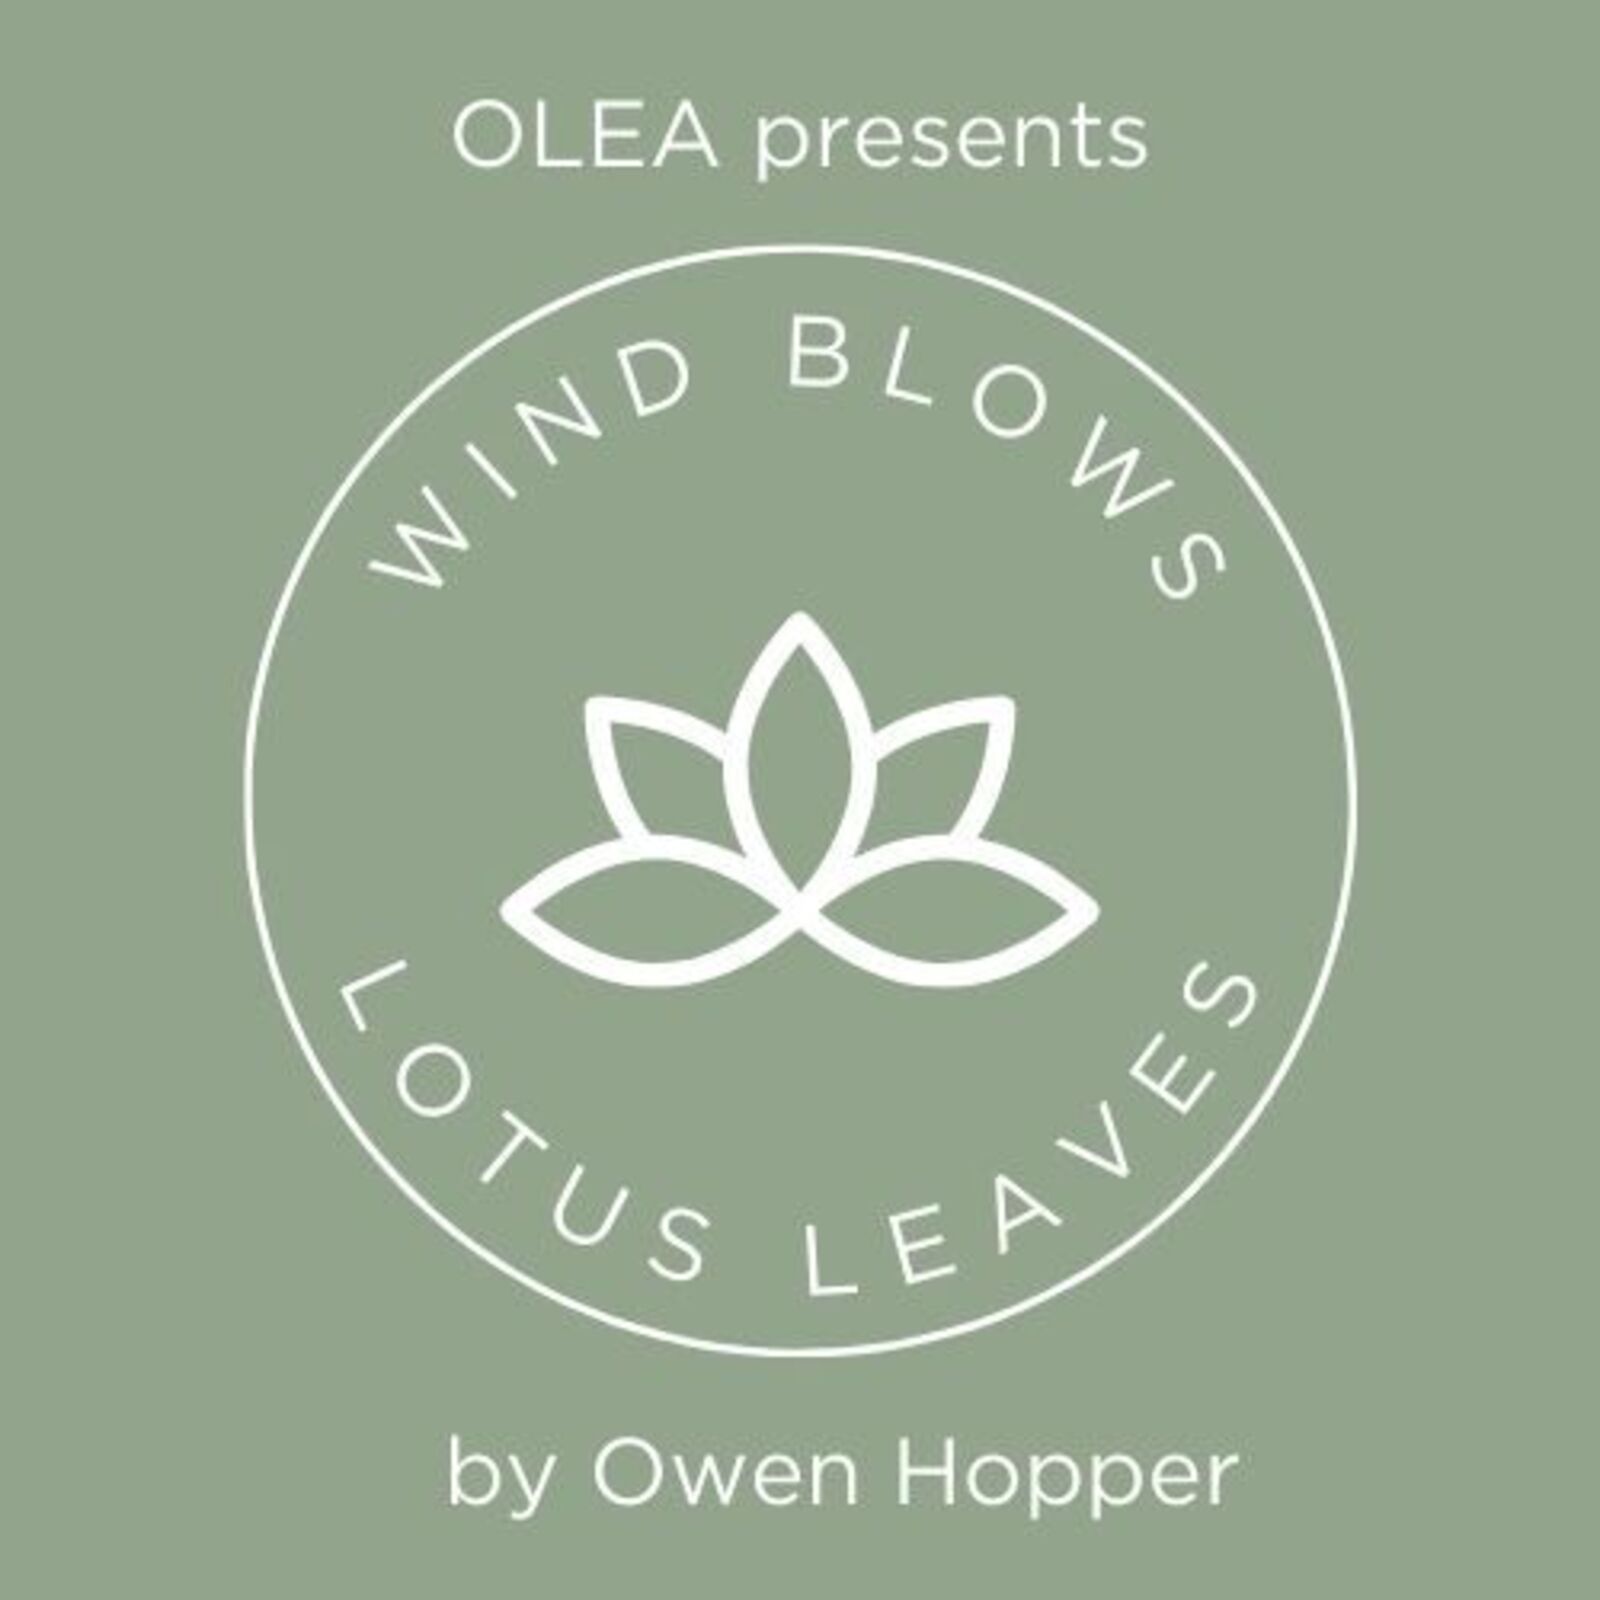 olea-presents-wind-blows-lotus-leaves-cincinnati-premiere